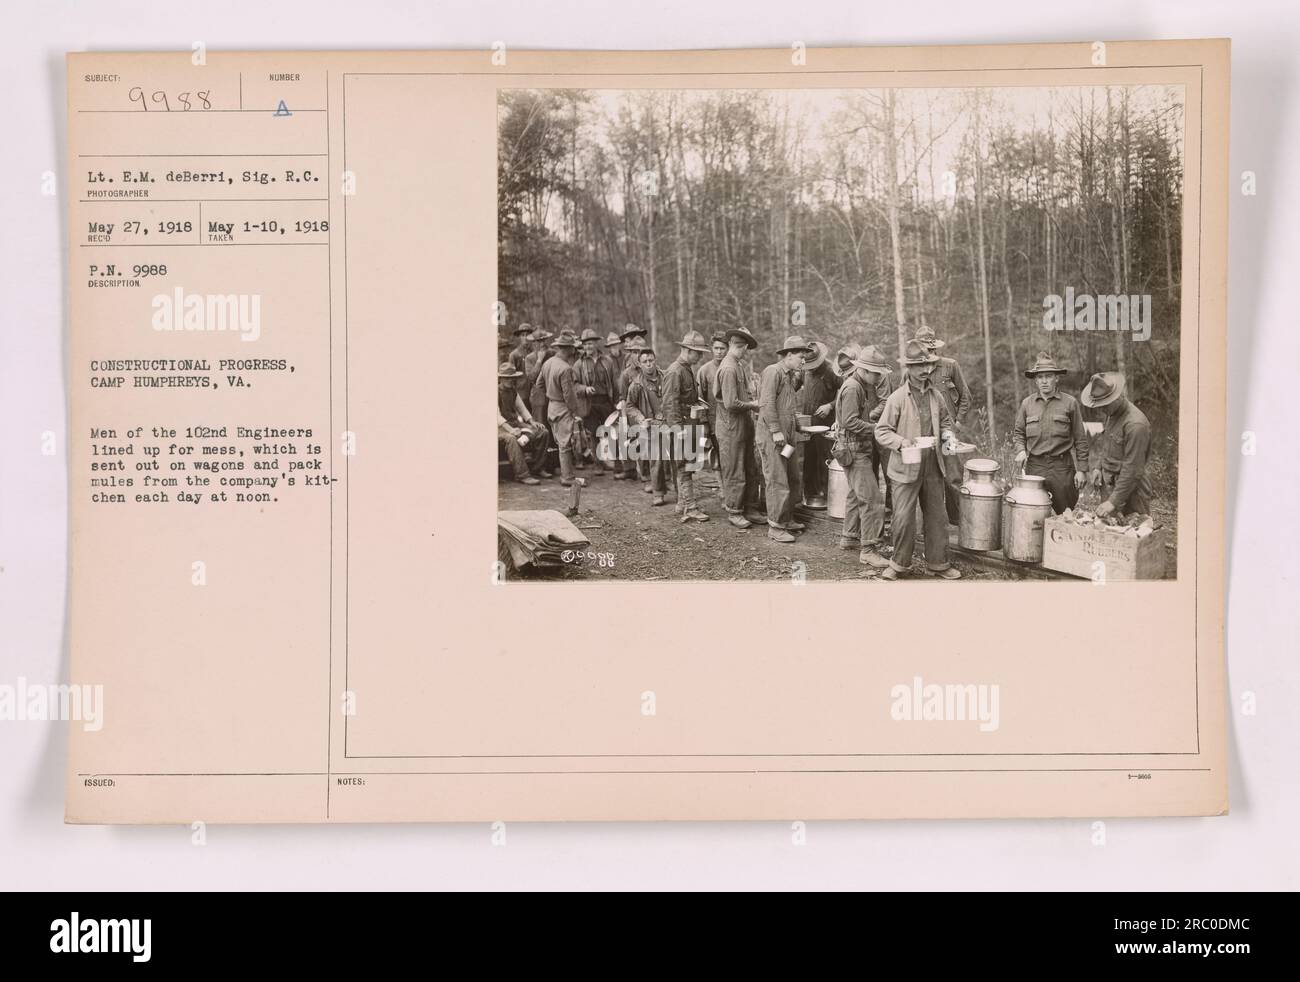 Les hommes du 102e génie à Camp Humphreys, Virginie, font la queue pour leur repas envoyé de la cuisine de la compagnie sur des wagons et des mules. Cette photographie, #111-SC-9988, a été prise par le lieutenant E.M. deBerri et SIG. R.C. le 27 mai 1918. L'image montre l'avancement de la construction au camp. Banque D'Images